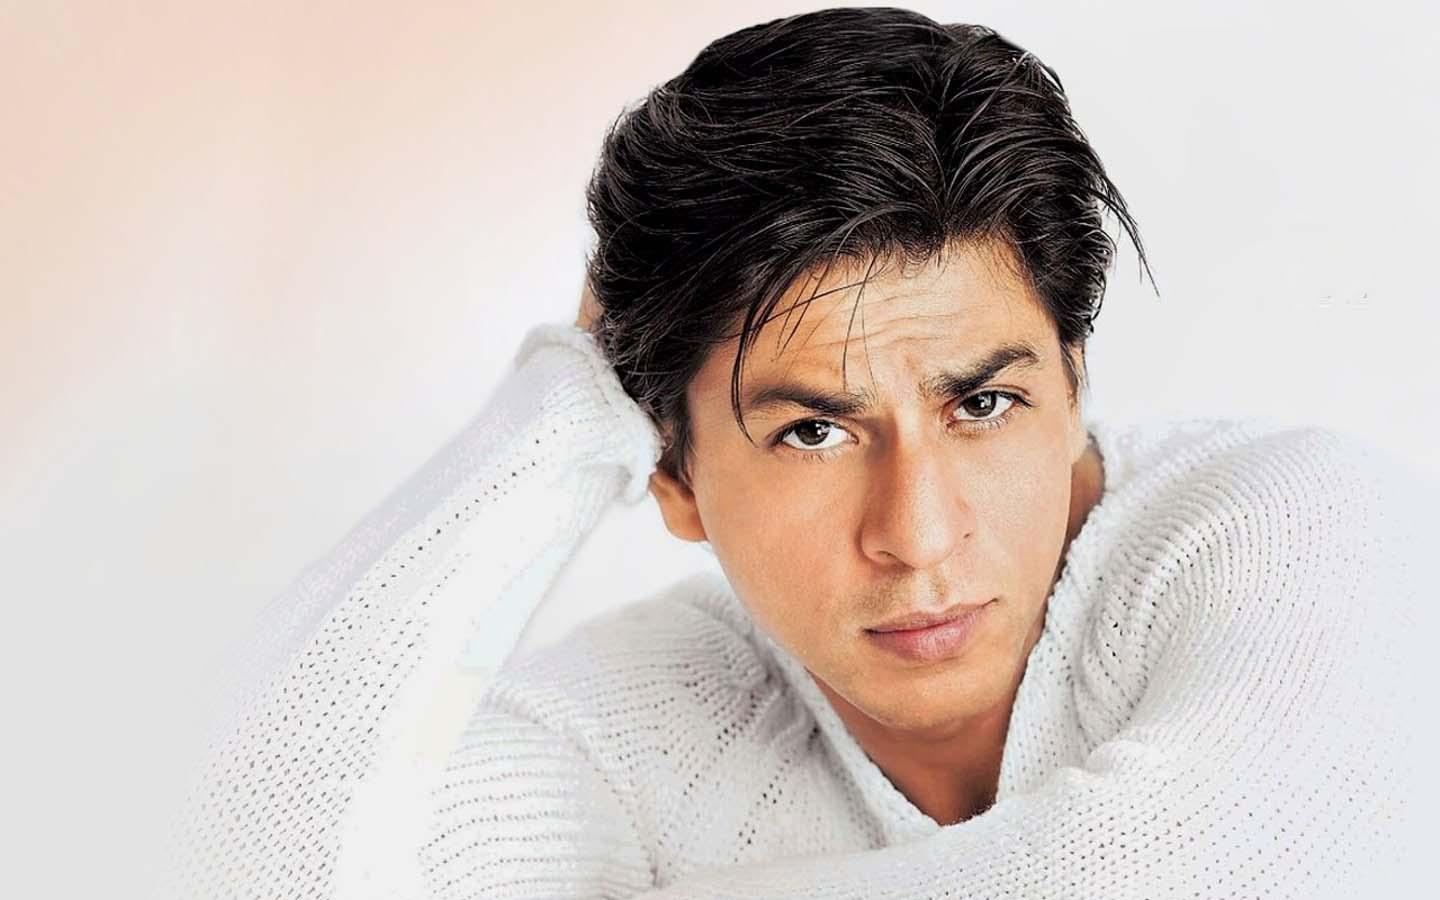 Shahrukh Khan in white